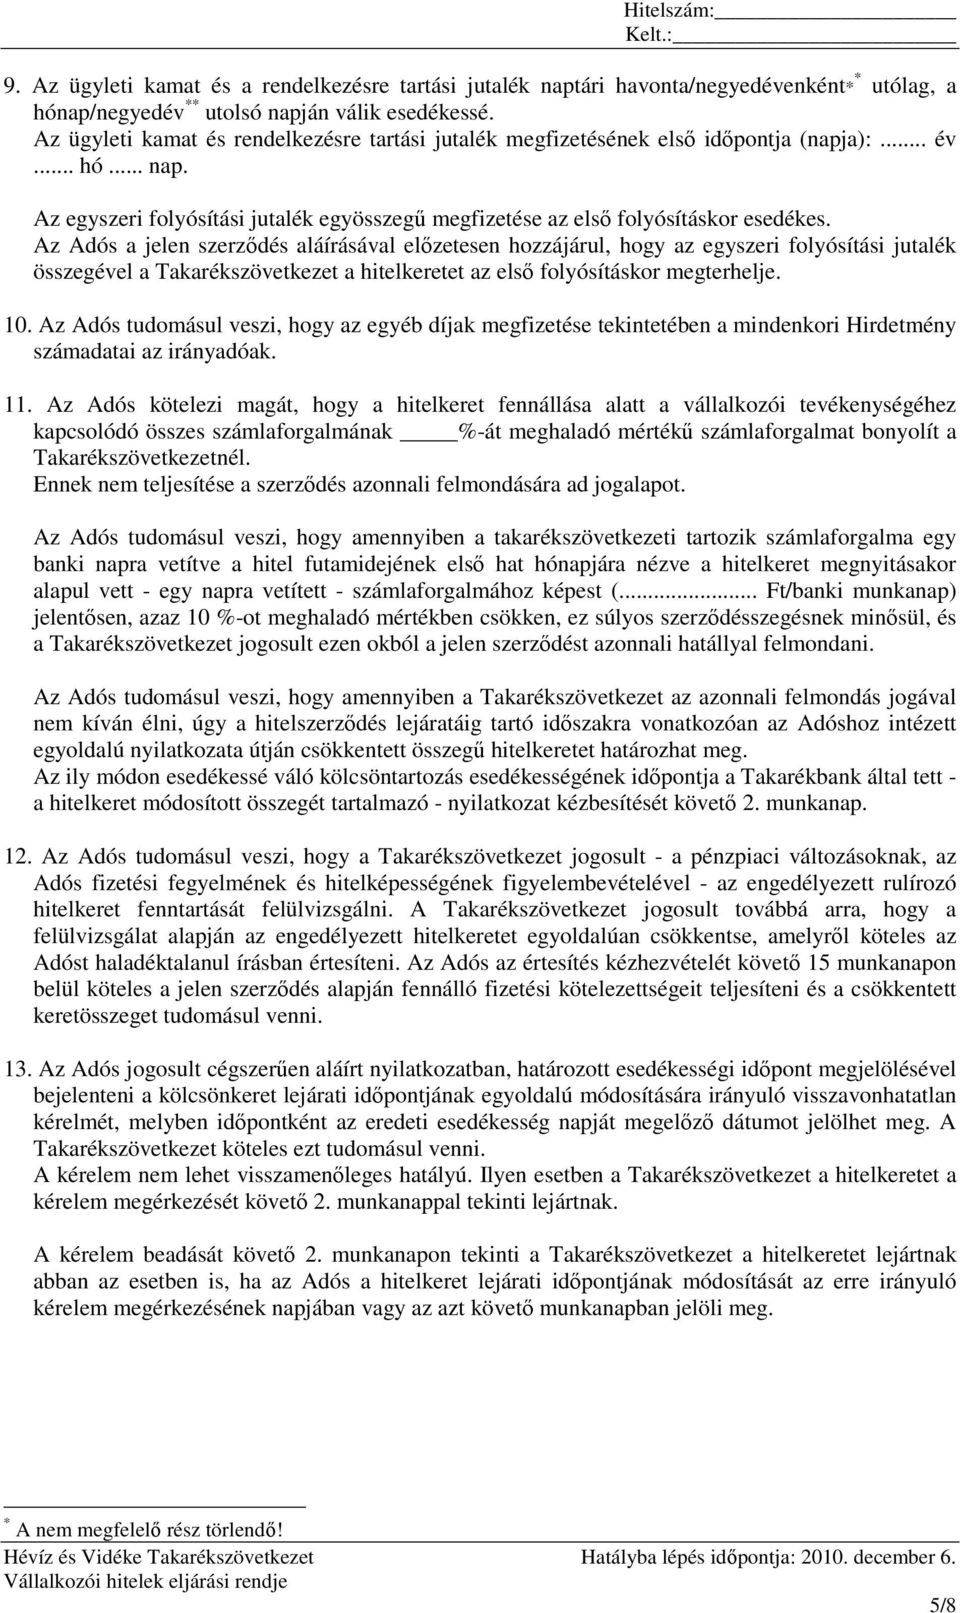 Az Adós a jelen szerzıdés aláírásával elızetesen hozzájárul, hogy az egyszeri folyósítási jutalék összegével a Takarékszövetkezet a hitelkeretet az elsı folyósításkor megterhelje. 10.